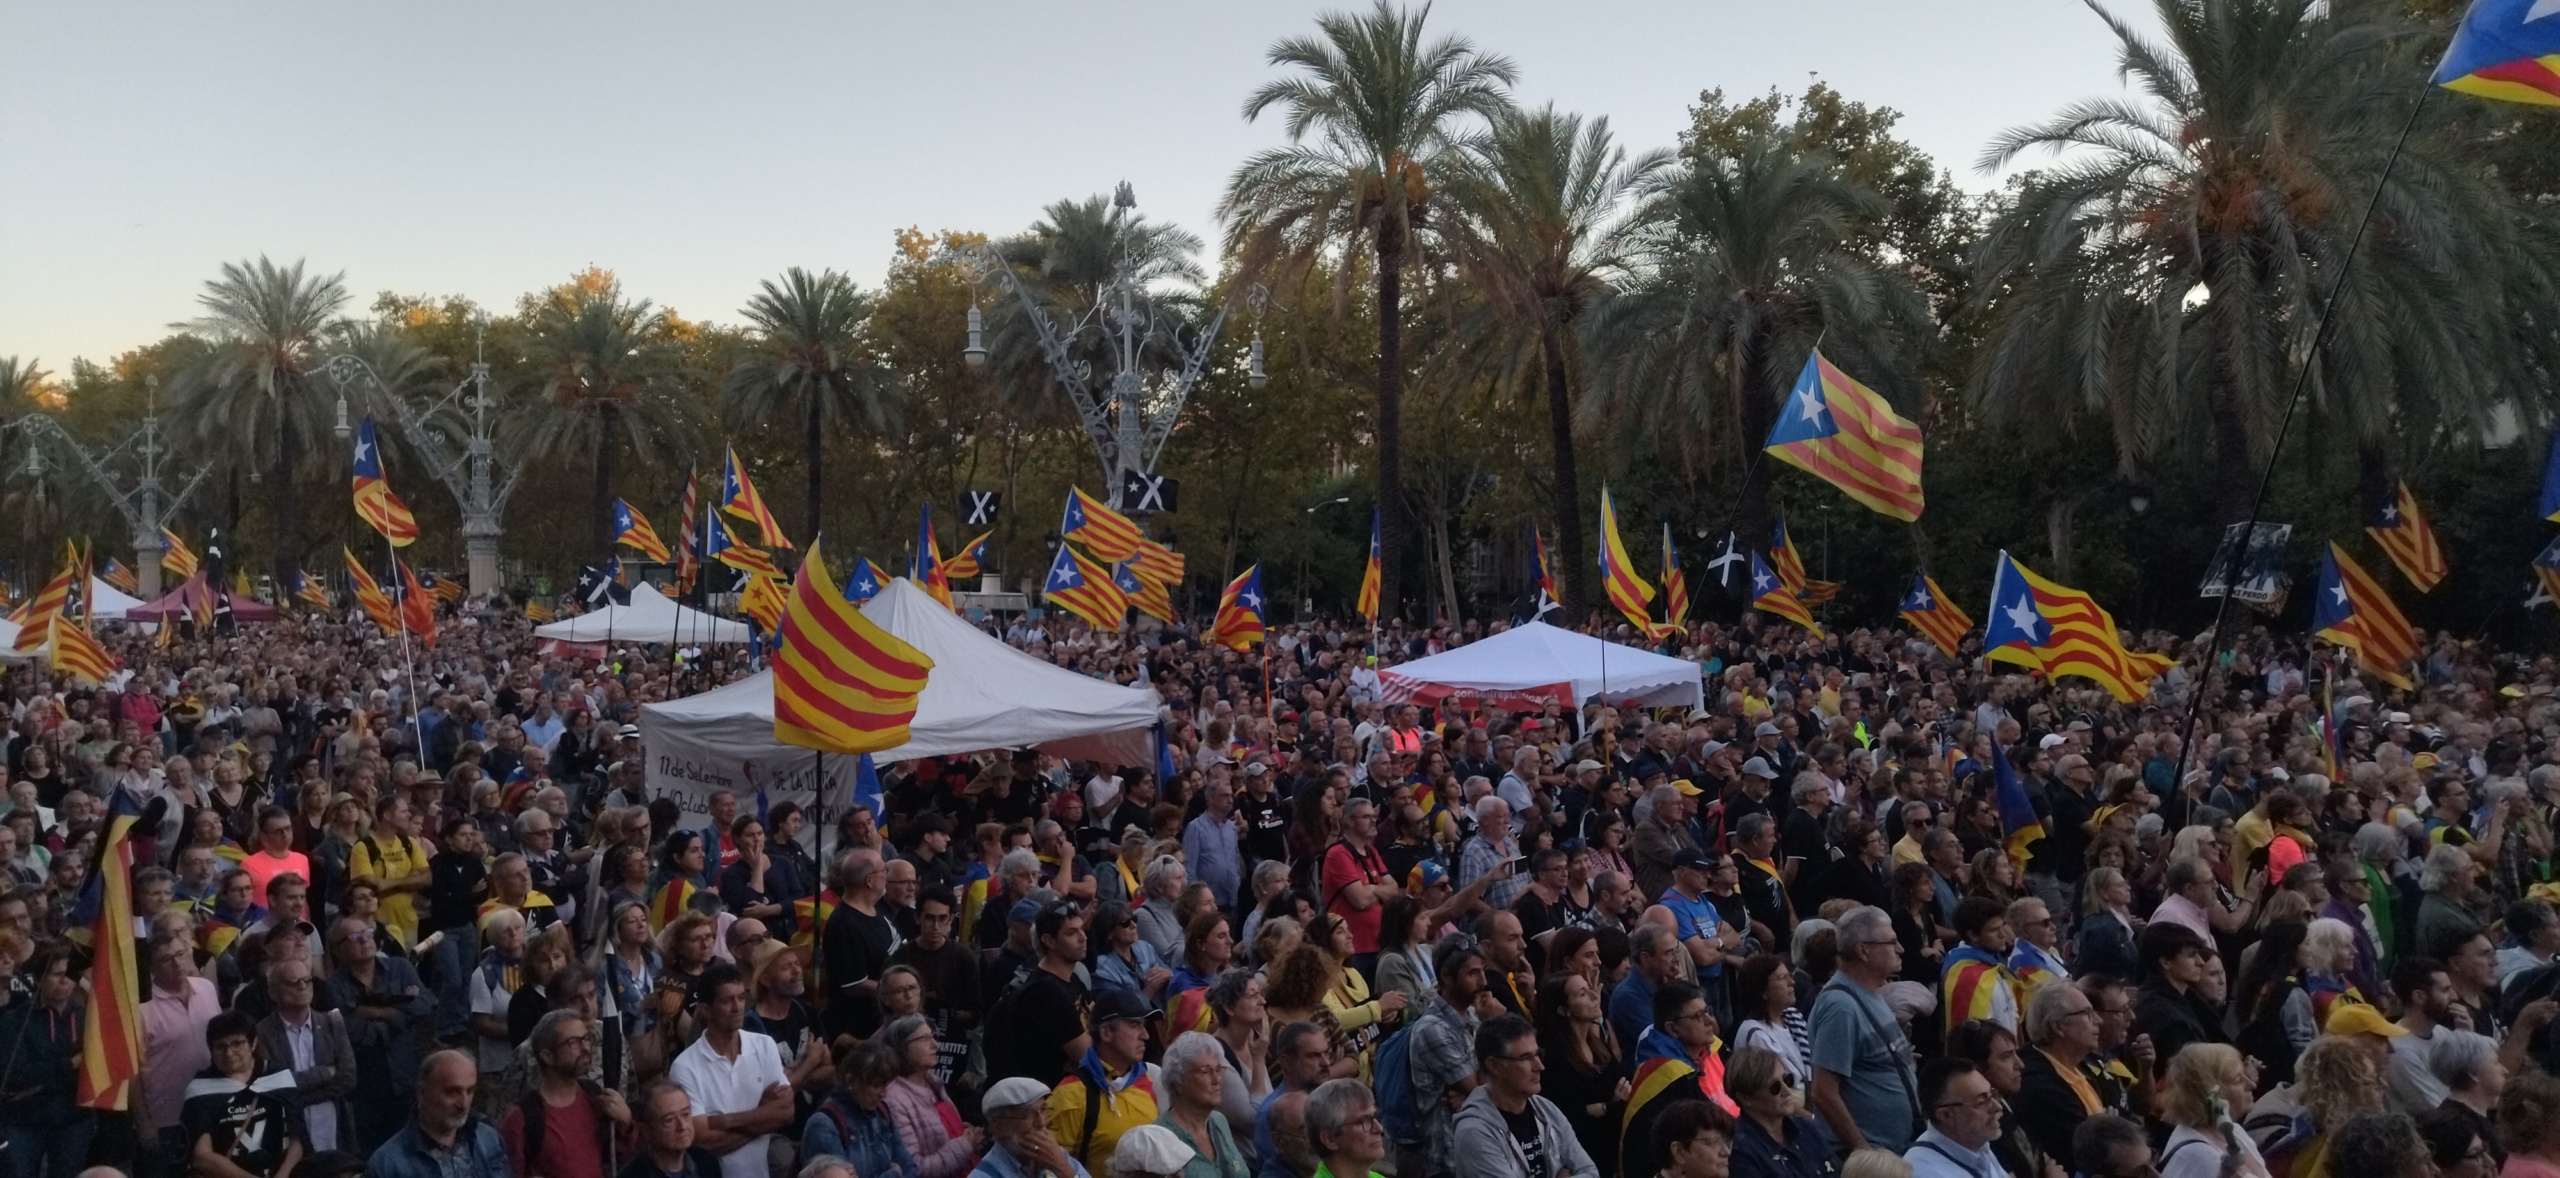 6 Aniversario del regerendum  de independencia en Cataluña